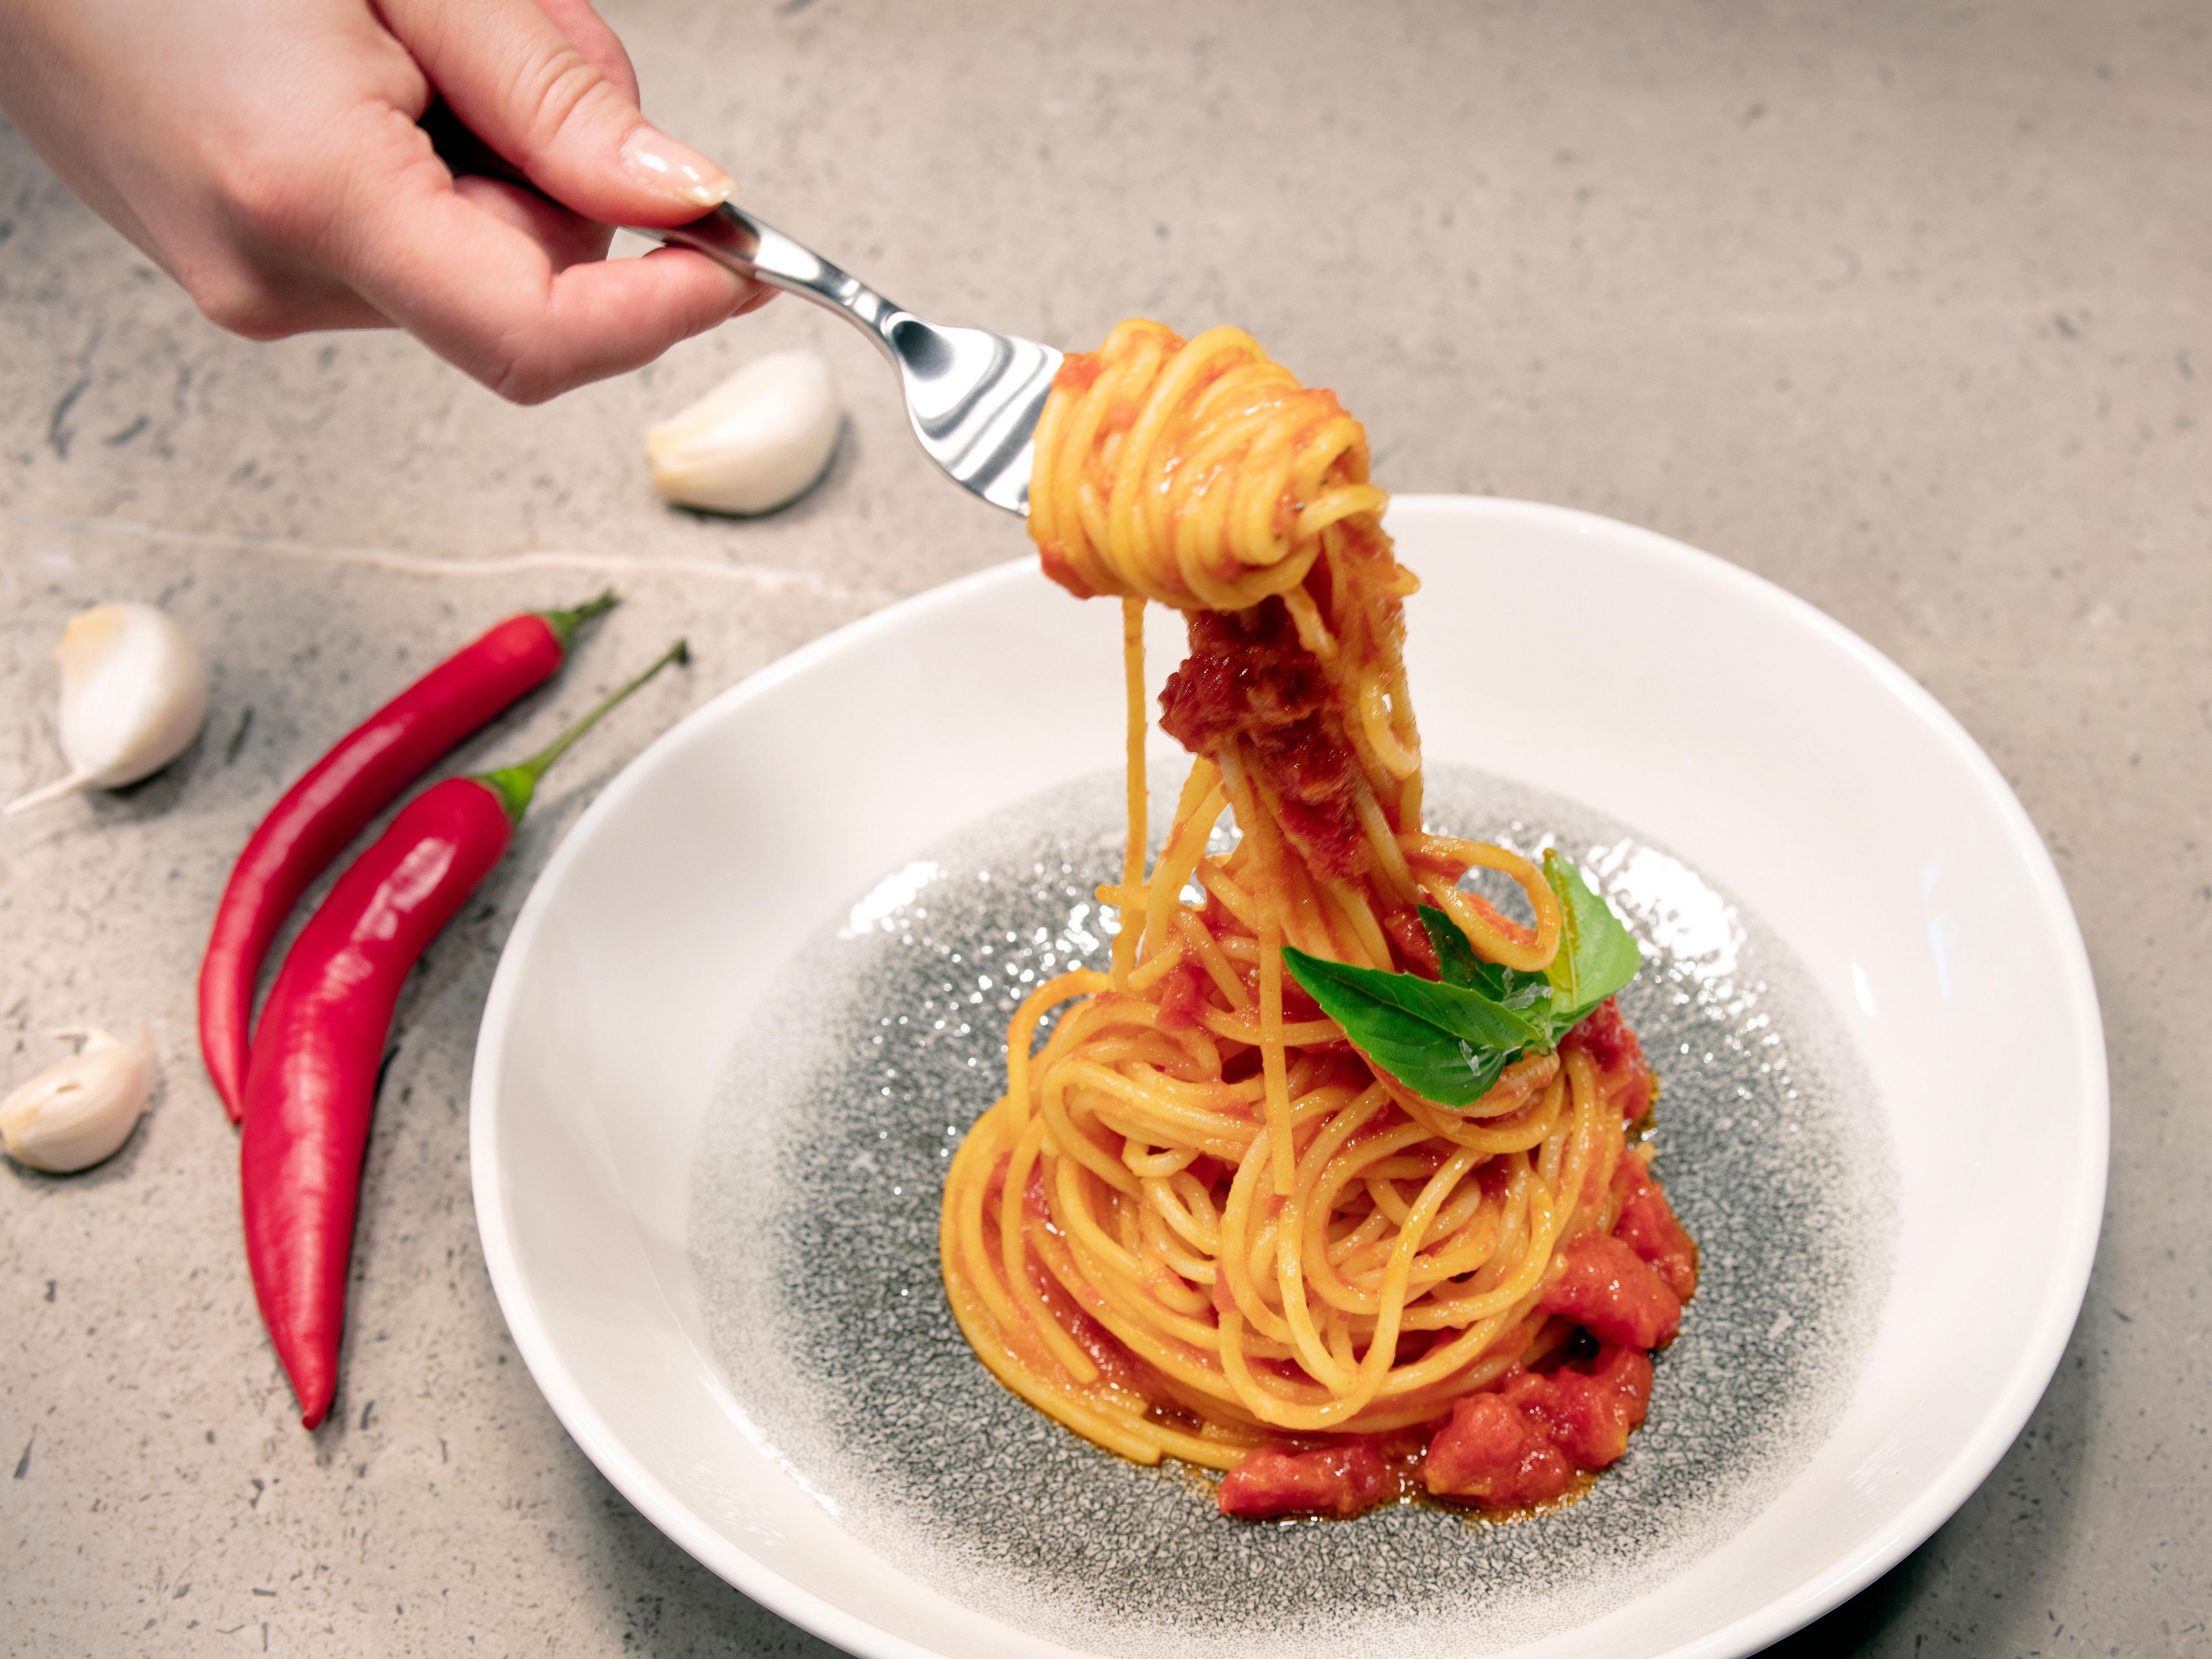 Enjoy our Italian Cuisine